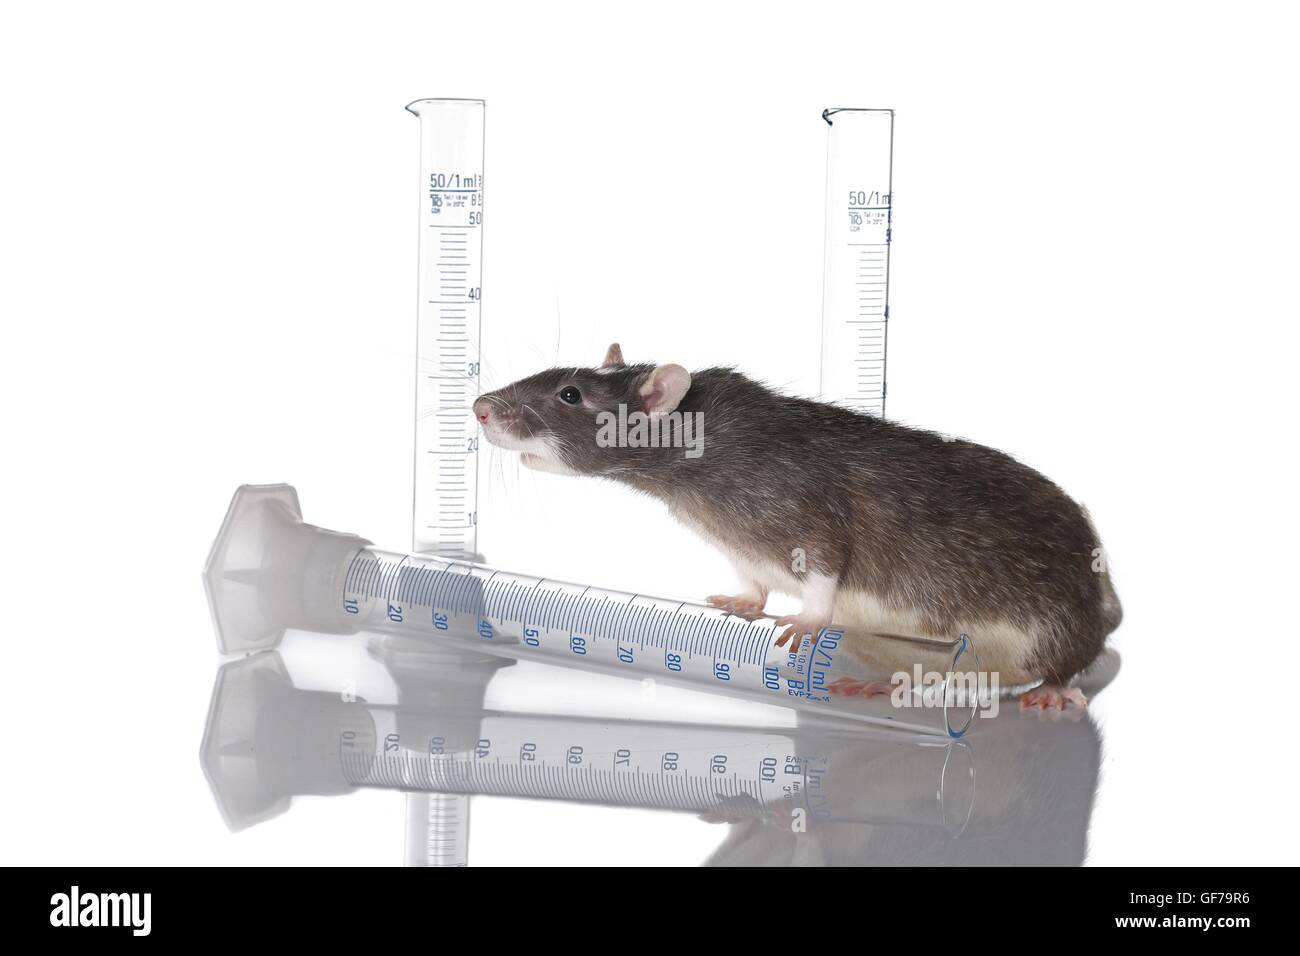 laboratory rat Stock Photo